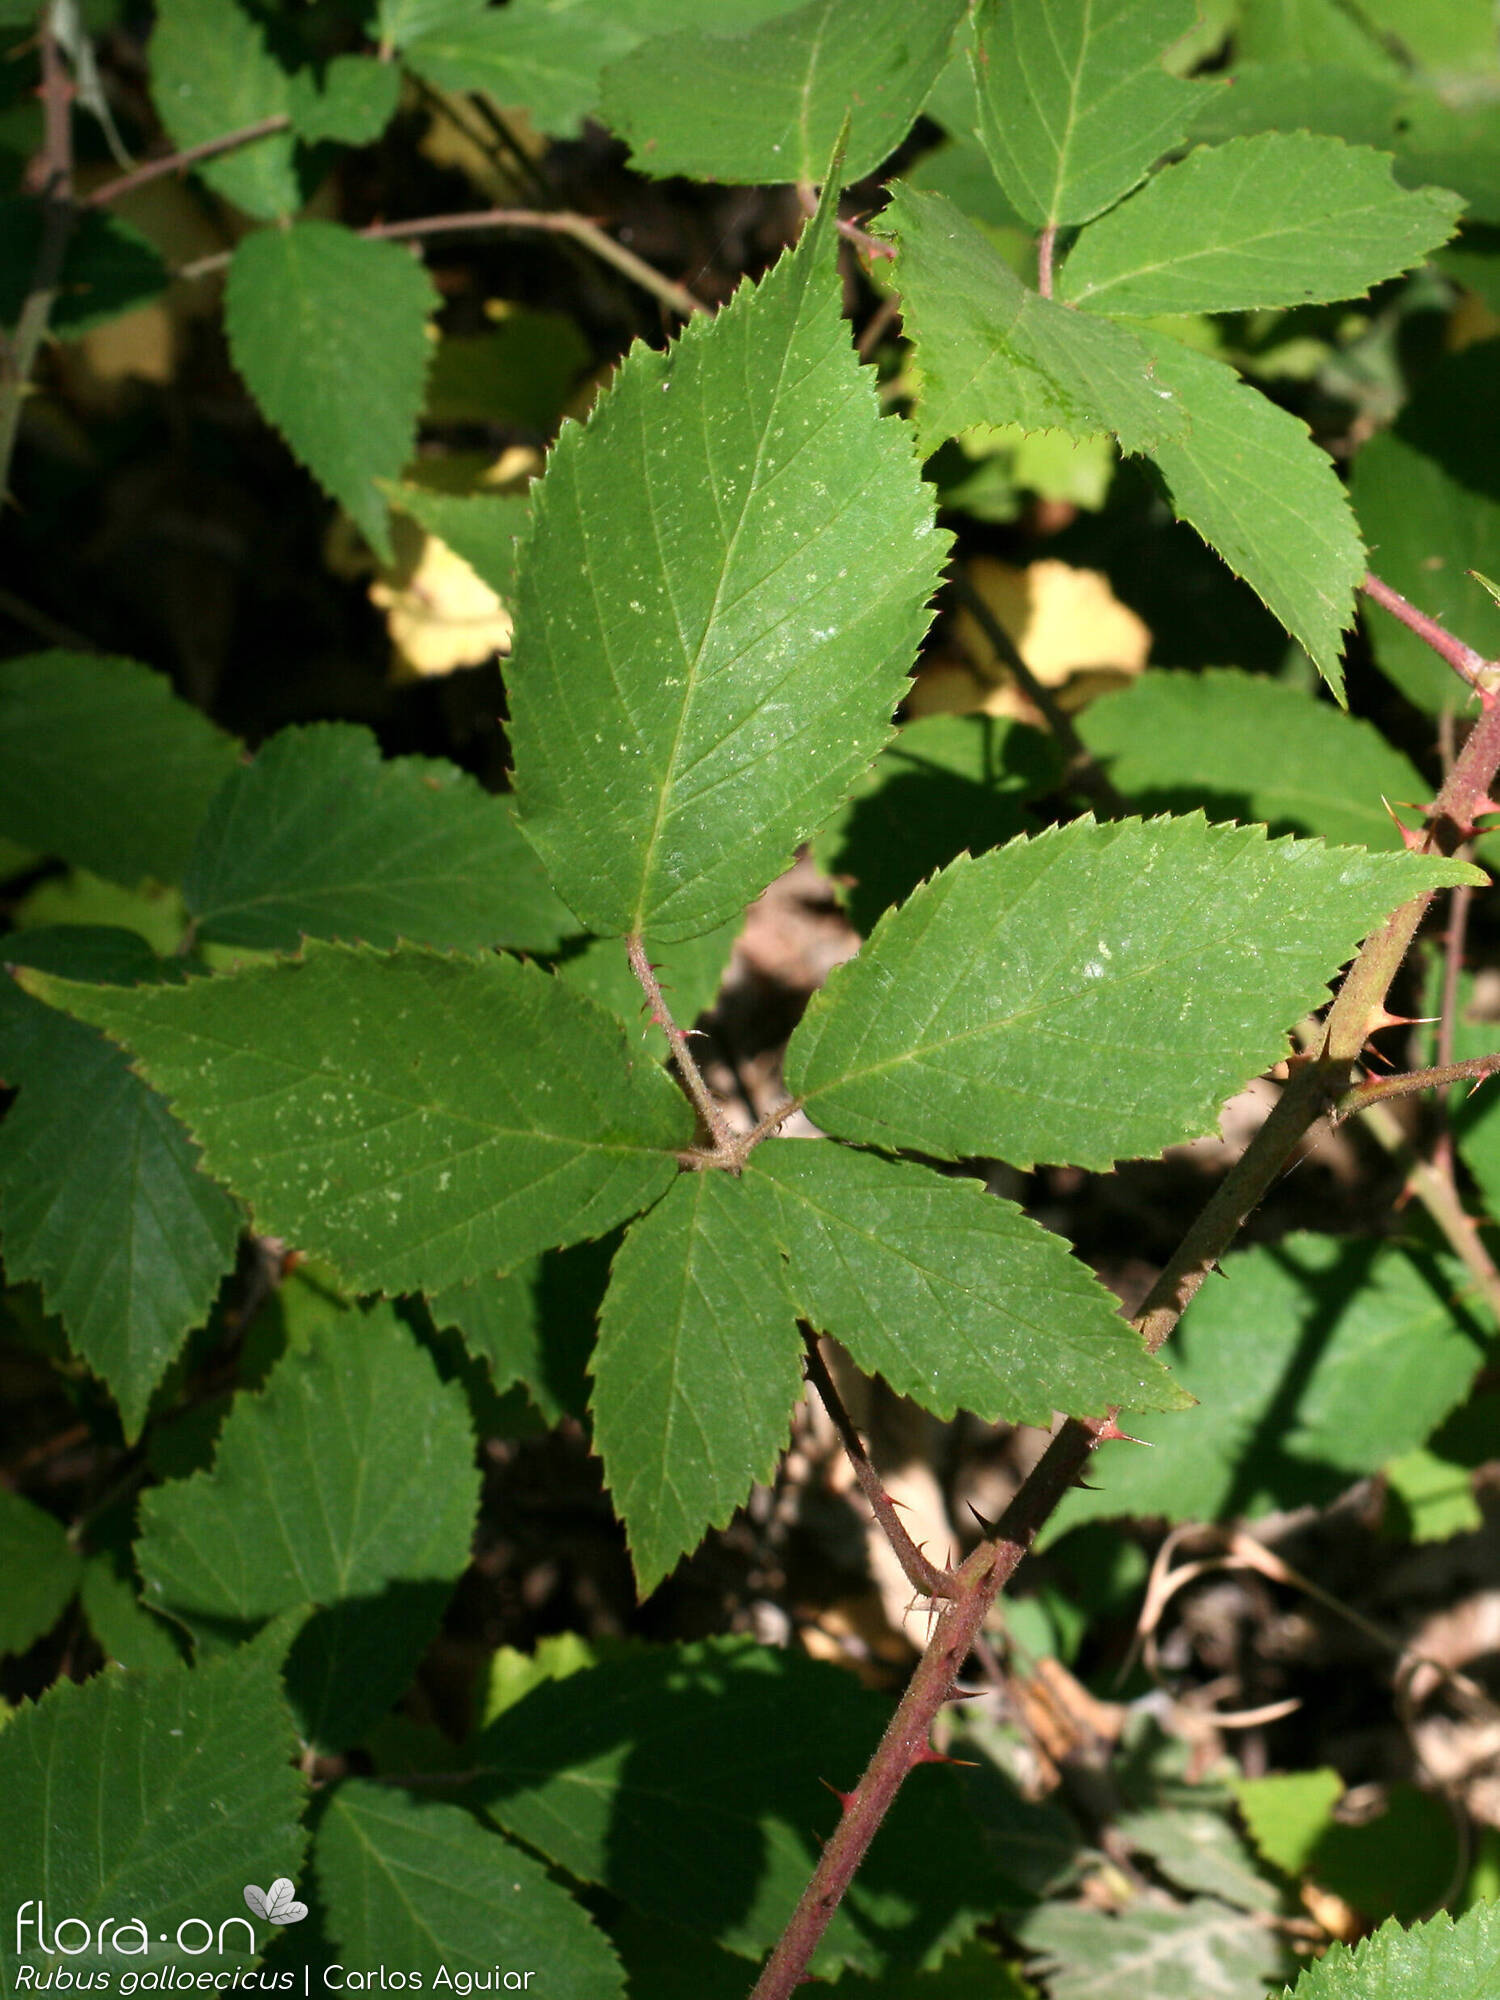 Rubus galloecicus - Folha | Carlos Aguiar; CC BY-NC 4.0